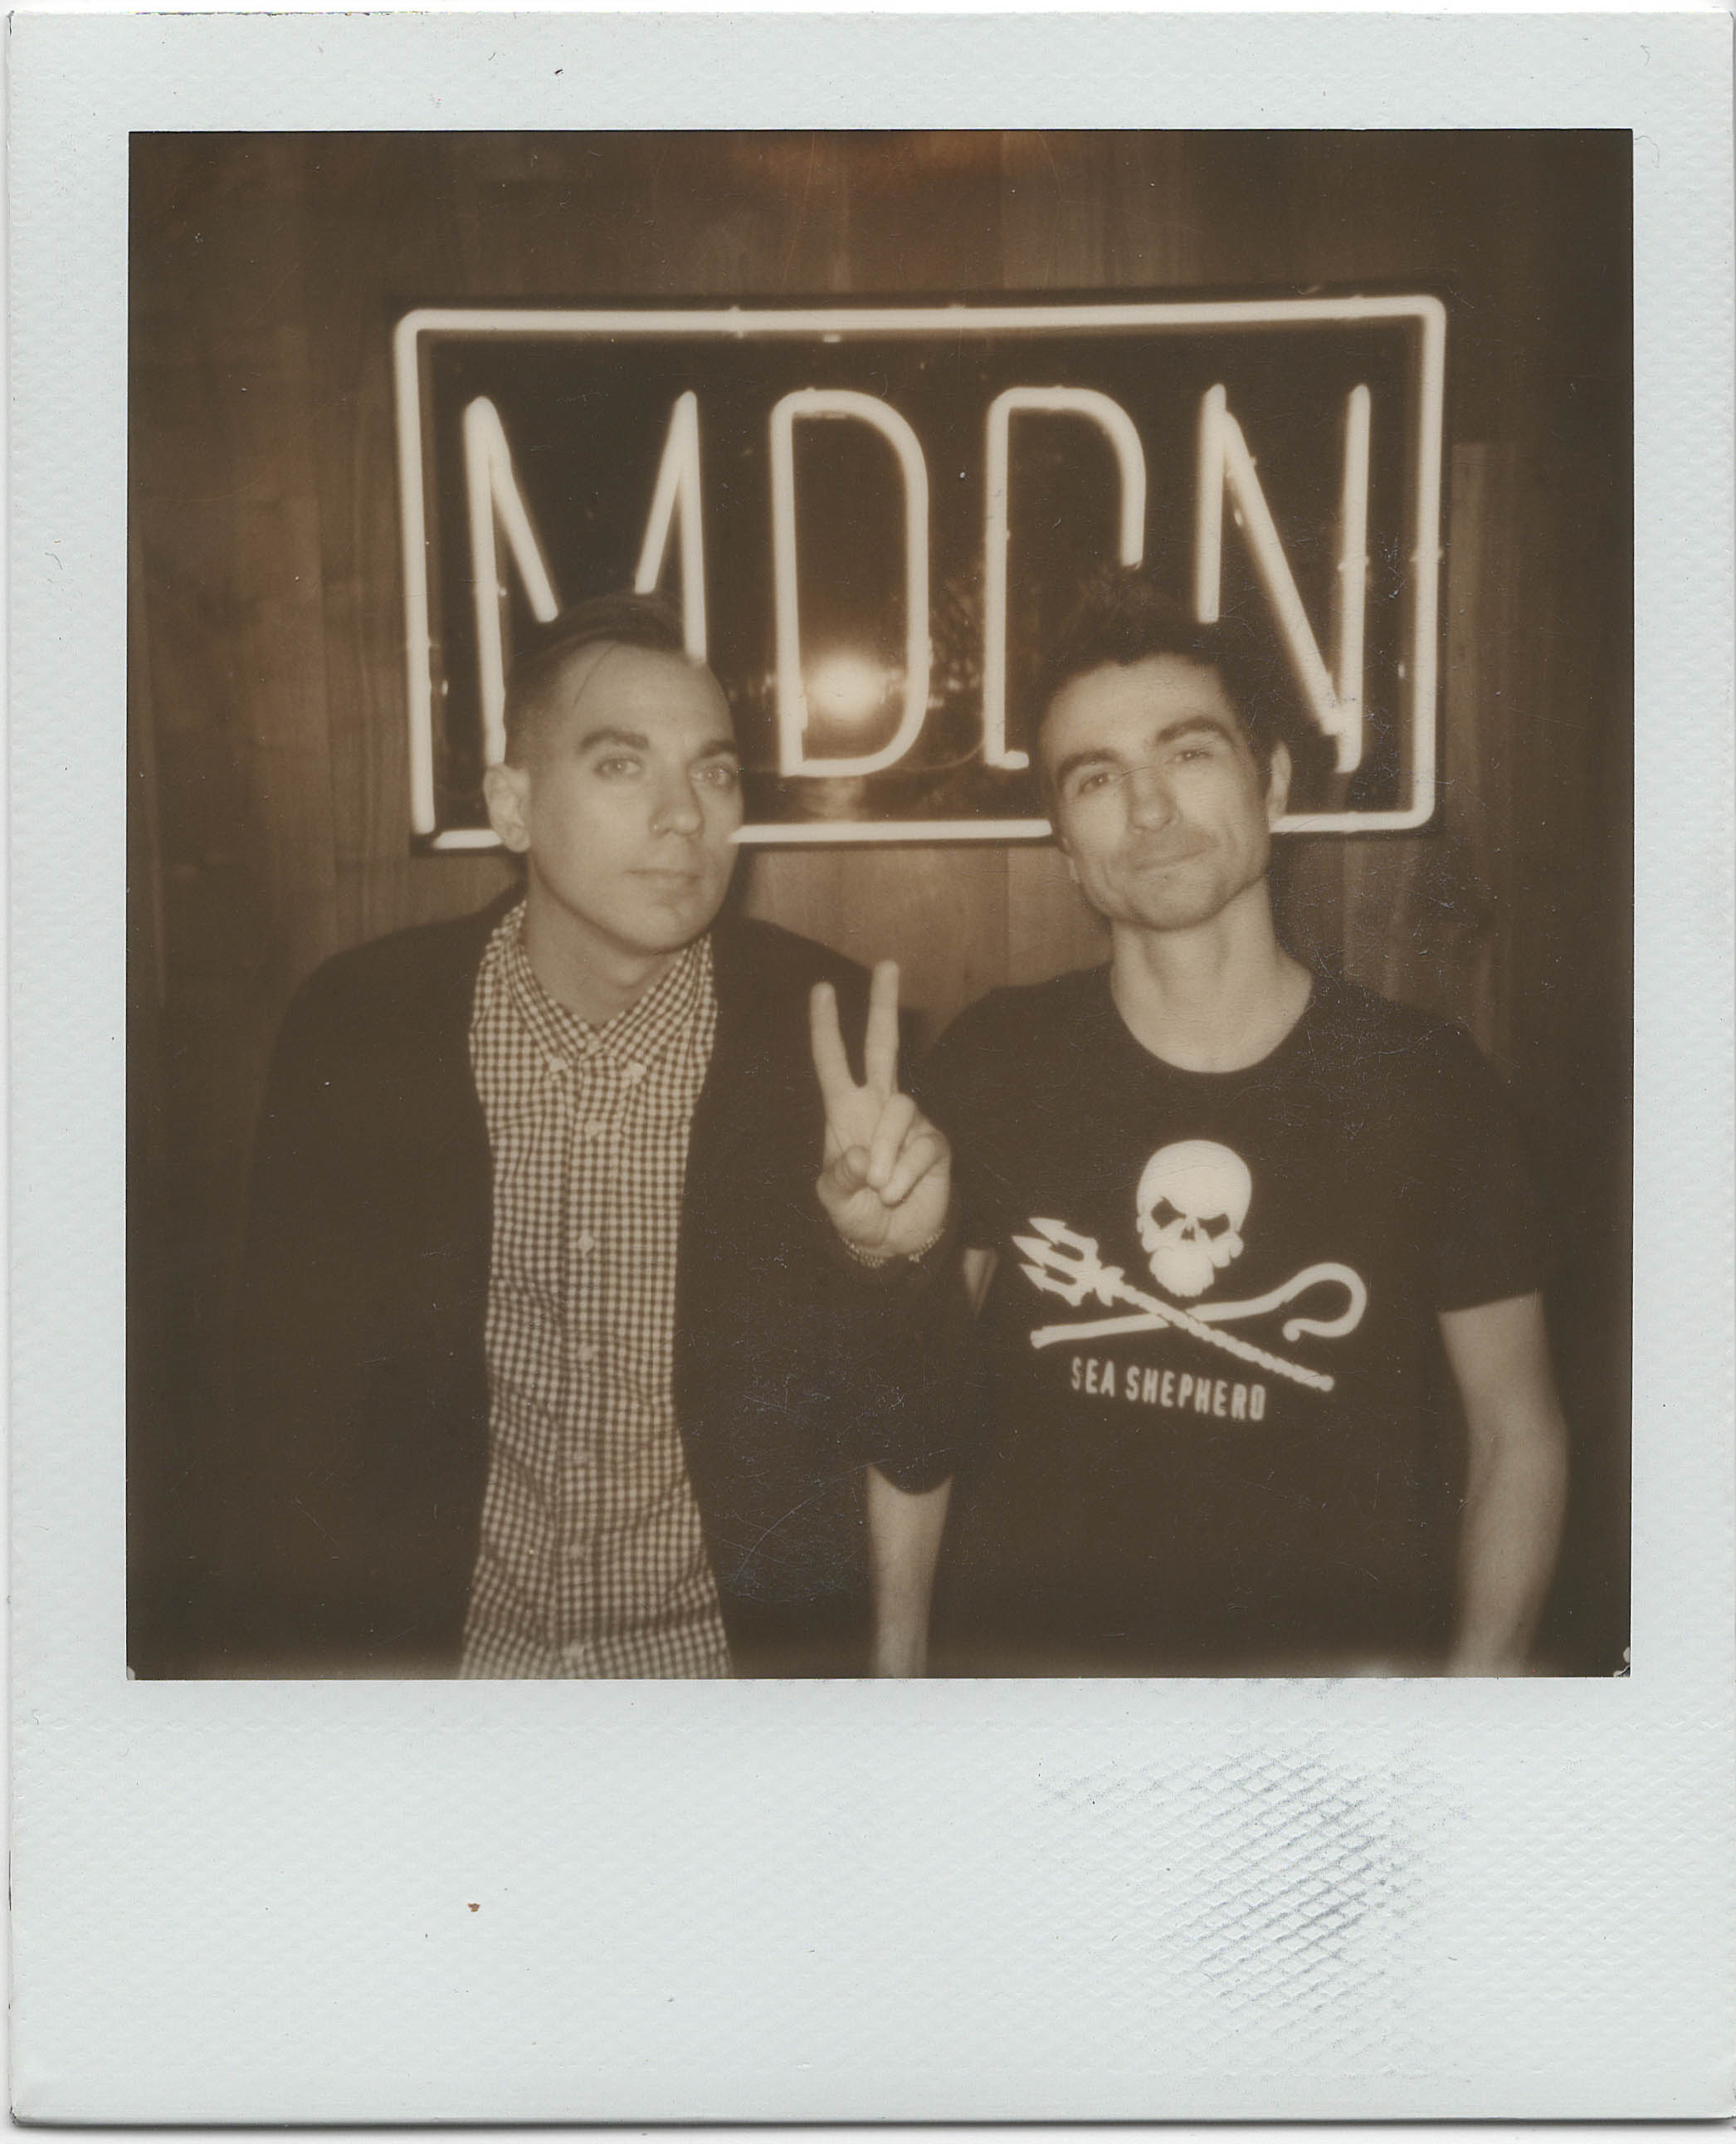  Anti-Flag at MDDN HQ Polaroid 600 film 